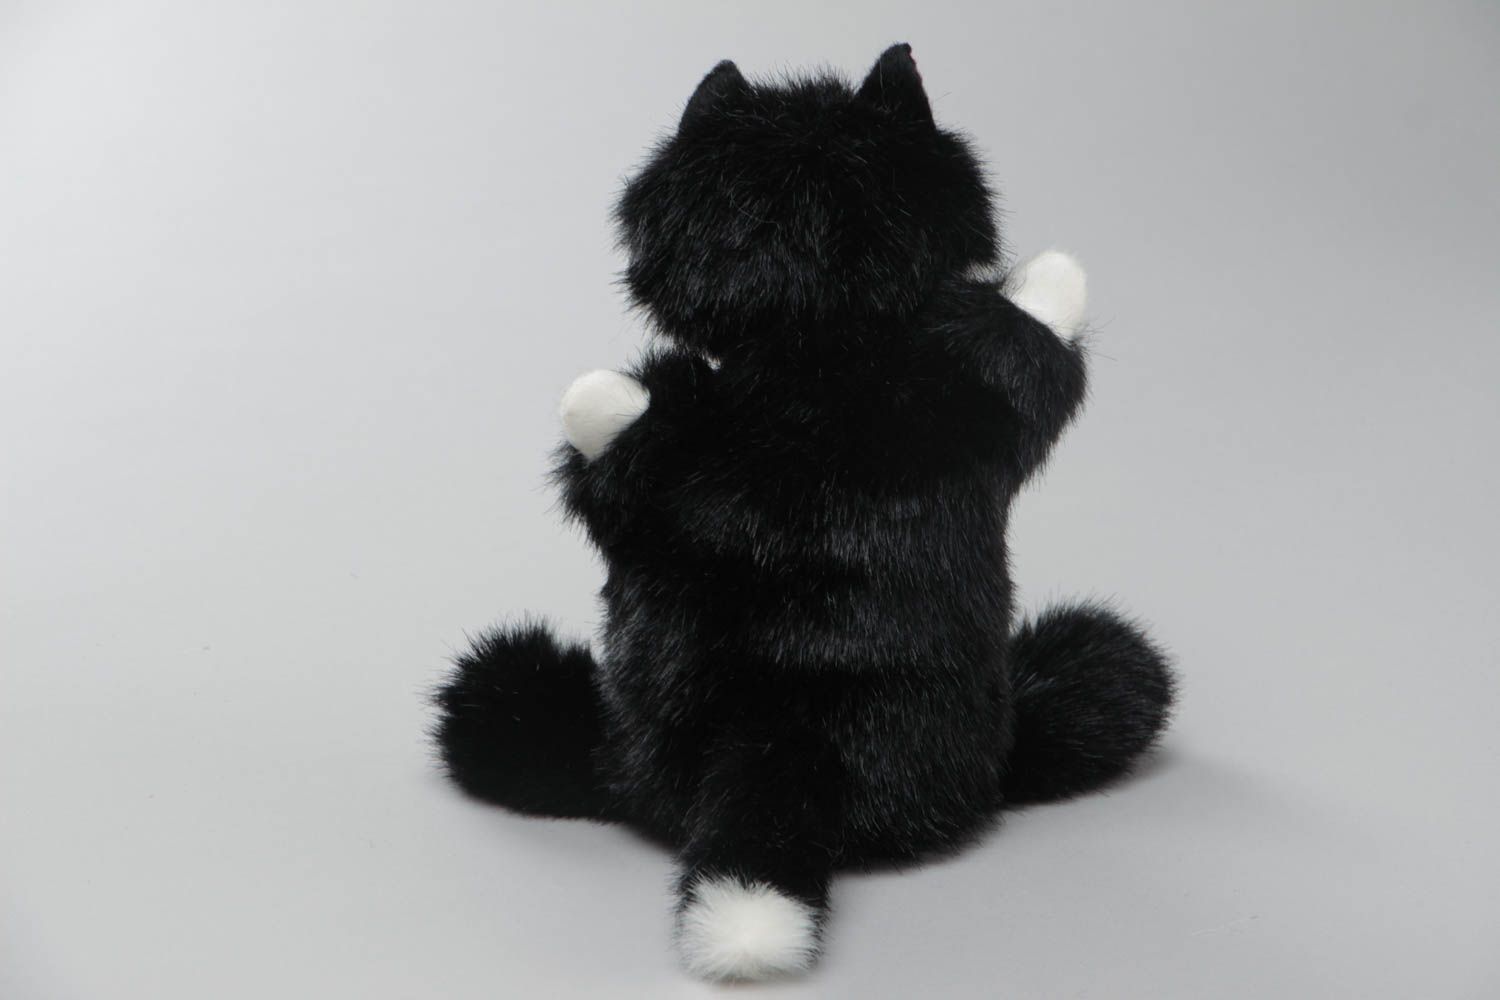 Katze Kuscheltier Handpuppe aus Kunstpelz schwarz weiß lustig Handarbeit foto 4